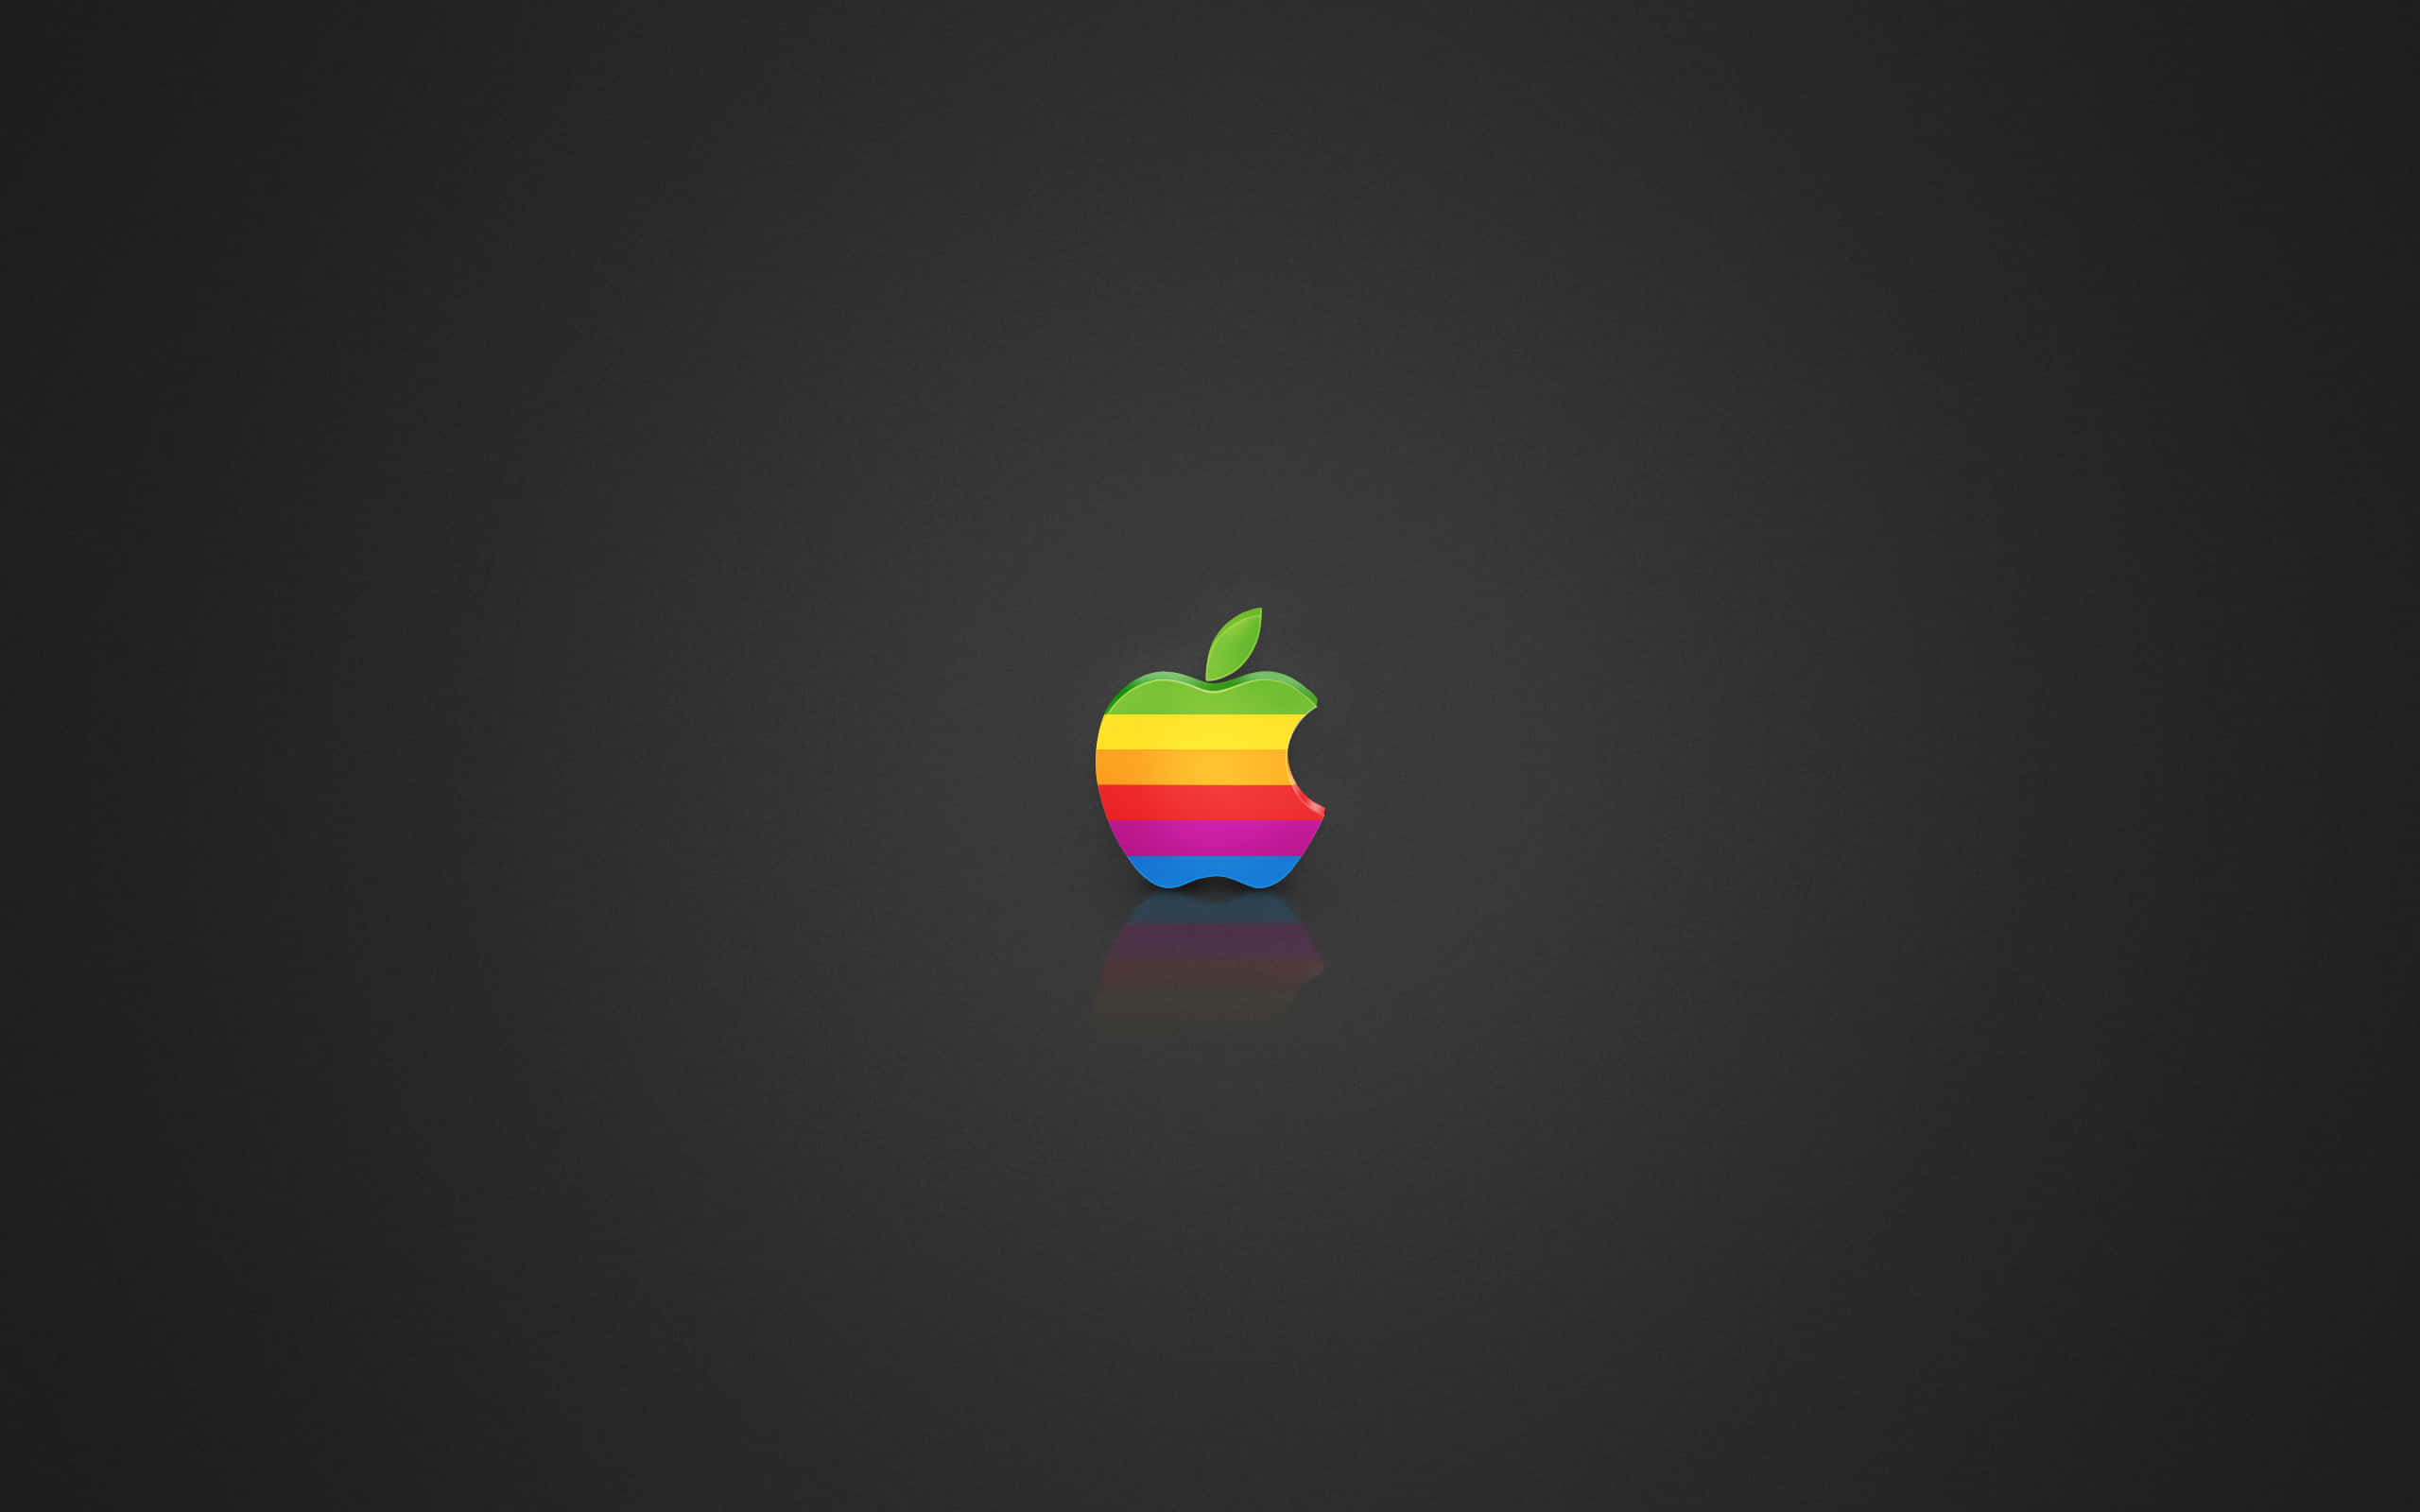 Logoda Apple 2560 X 1600 Plano De Fundo